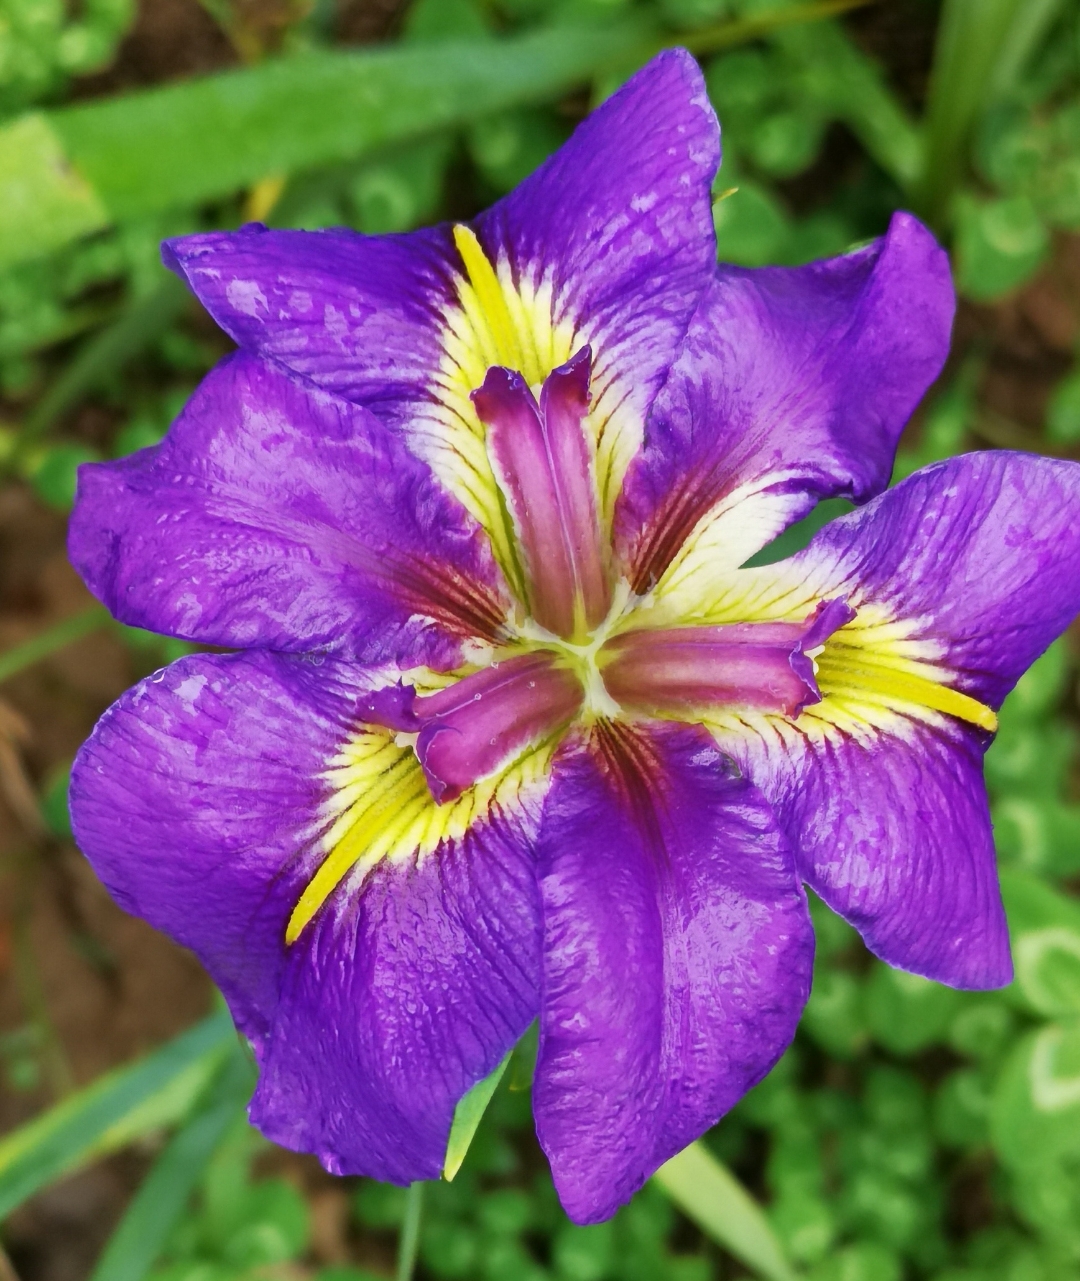 98梦幻鸢尾,花中仙子下凡尘94  94哇,这朵紫色鸢尾花简直是花中